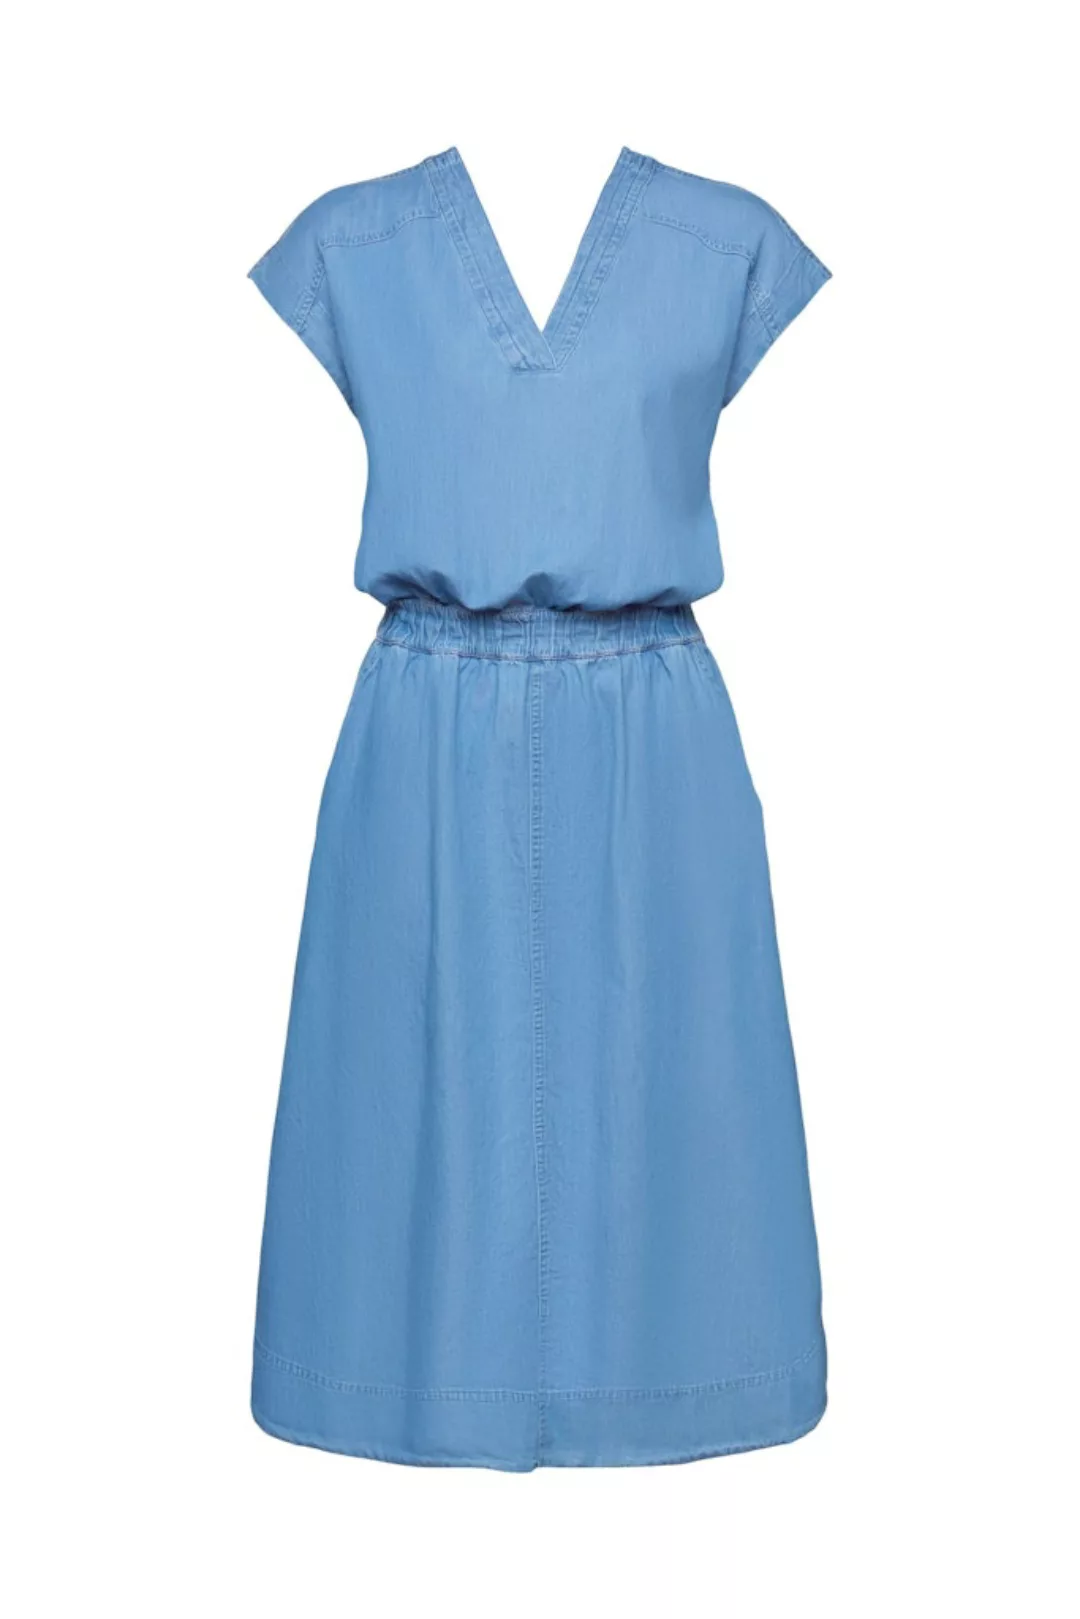 Esprit Damen Kleid 034ee1e319 günstig online kaufen